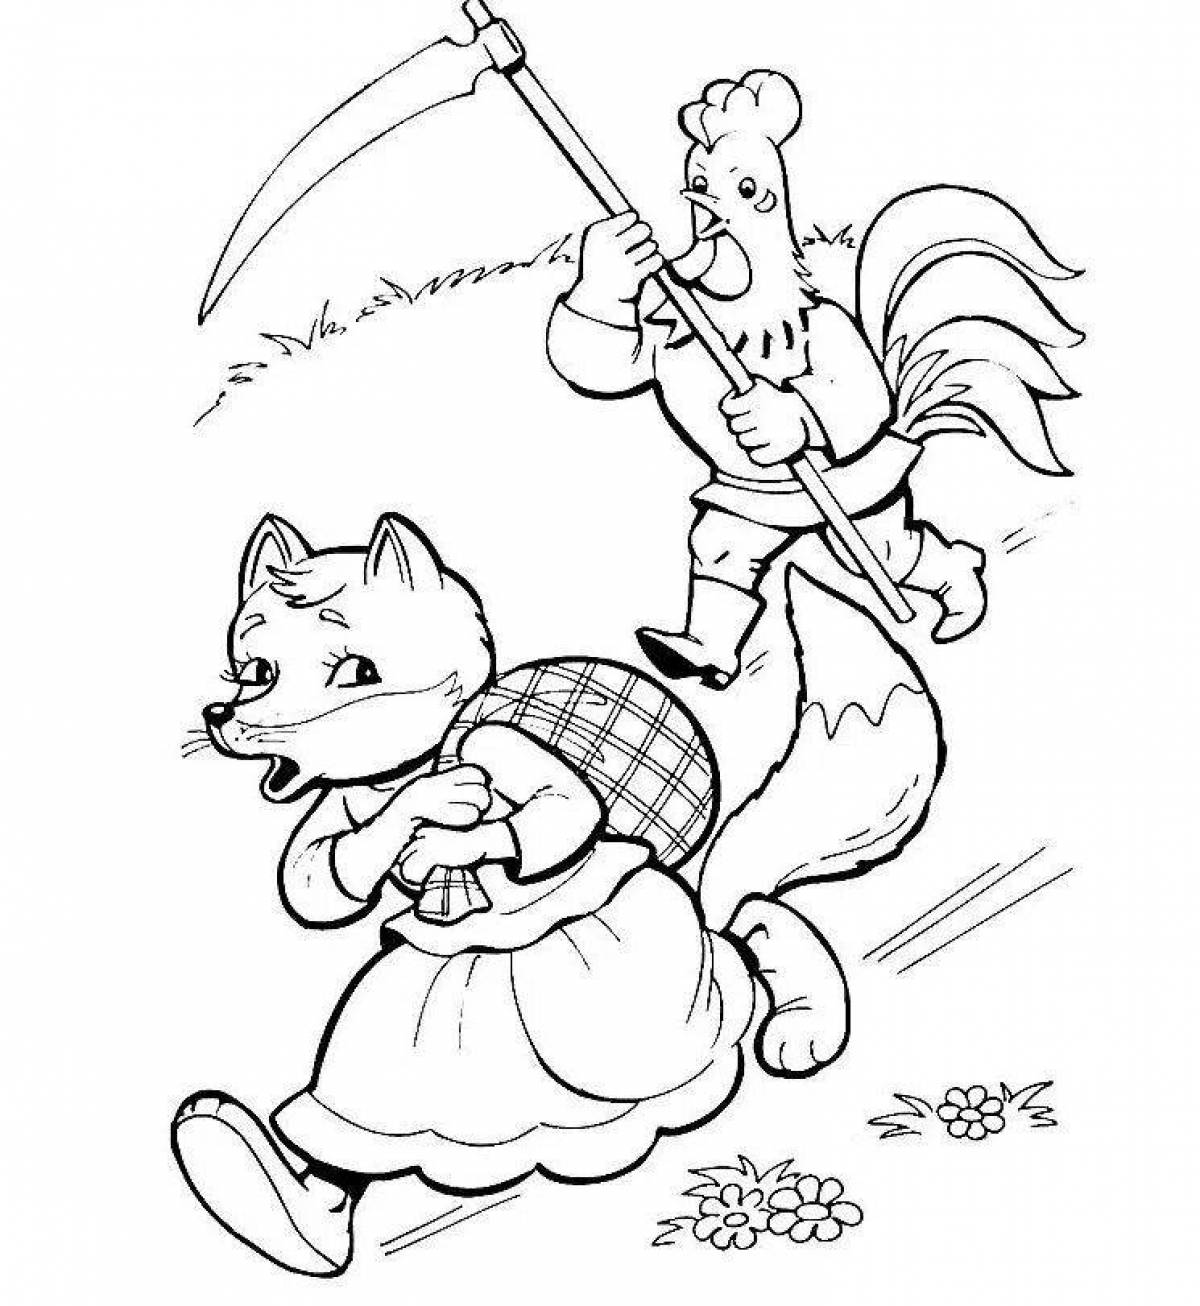 Лисичка из сказки Заюшкина избушка раскраска для детей